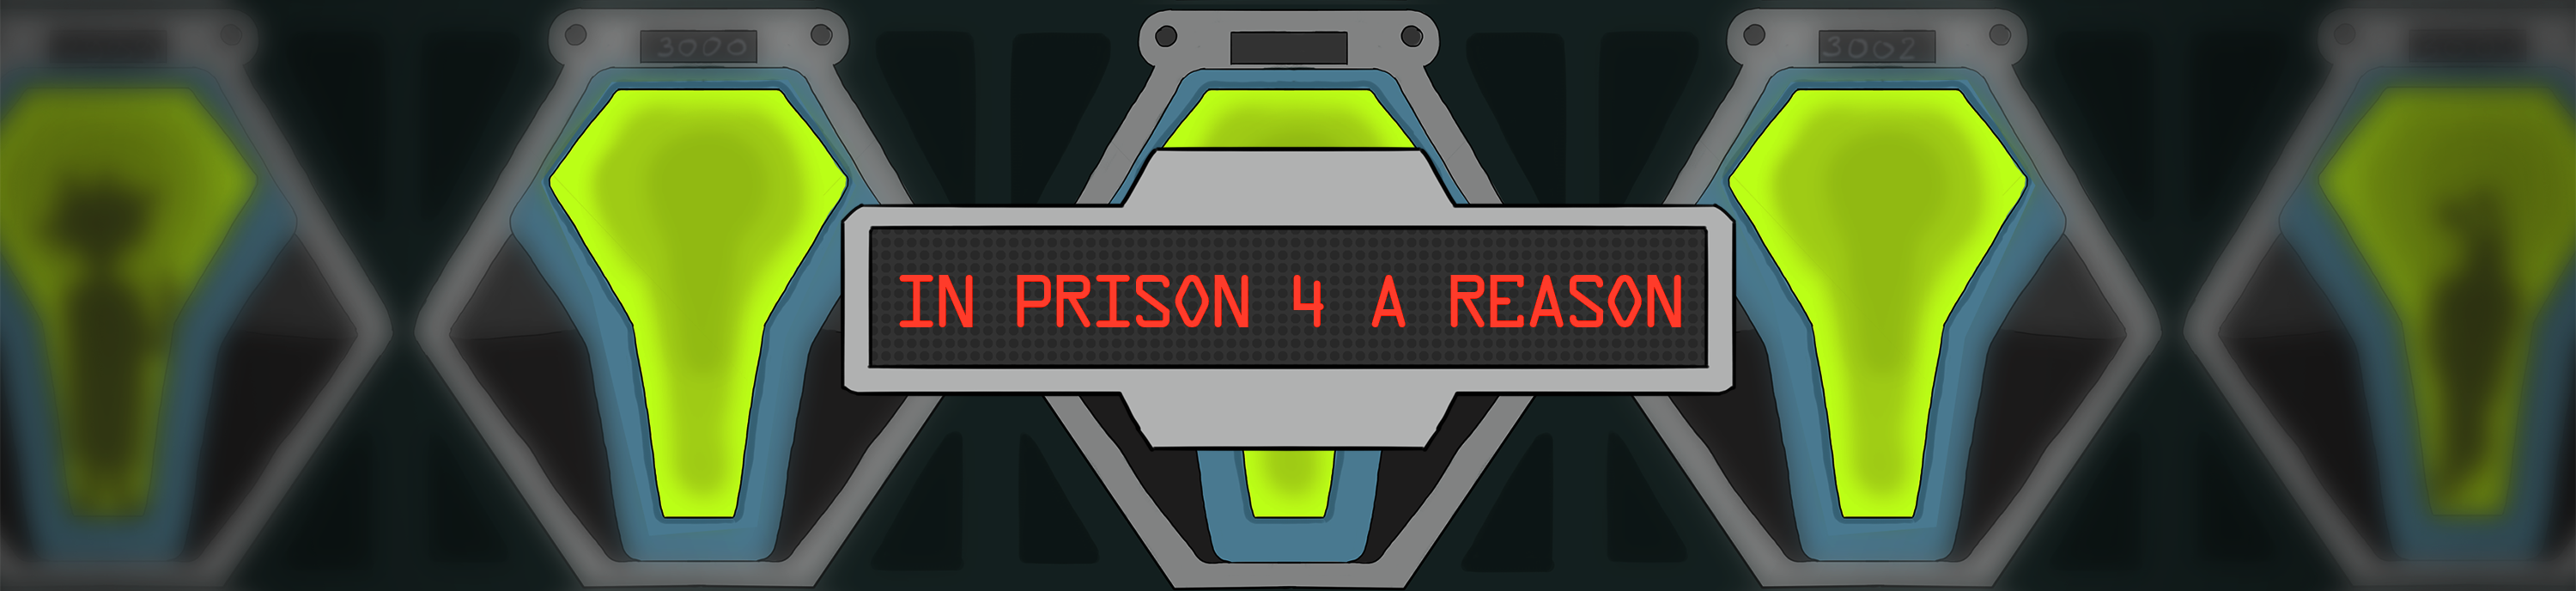 In prison 4 a reason